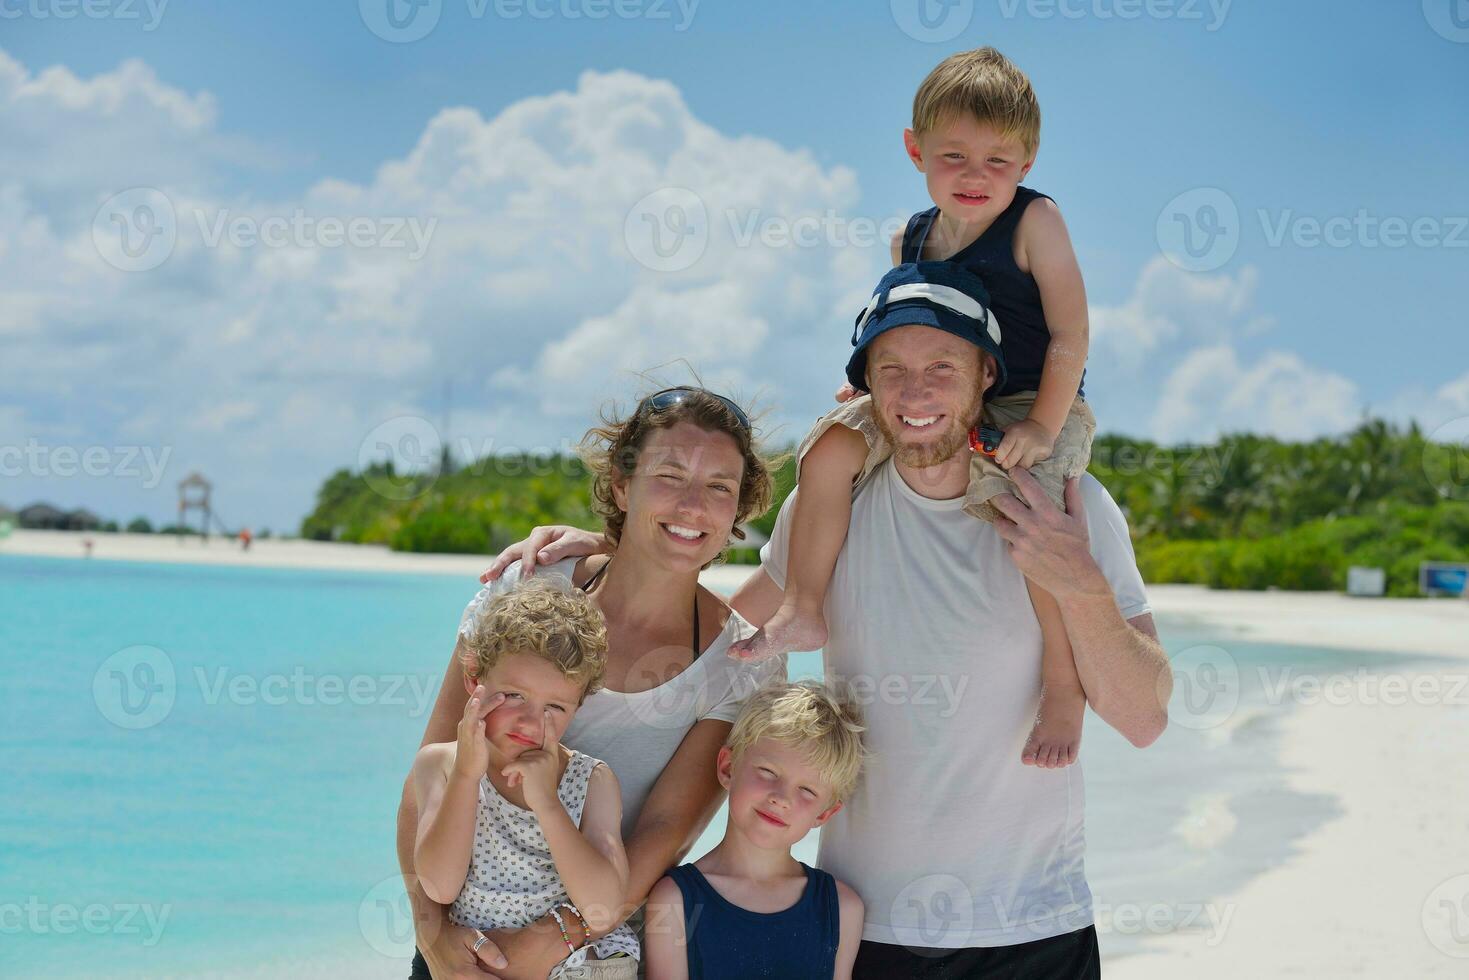 famille heureuse en vacances photo